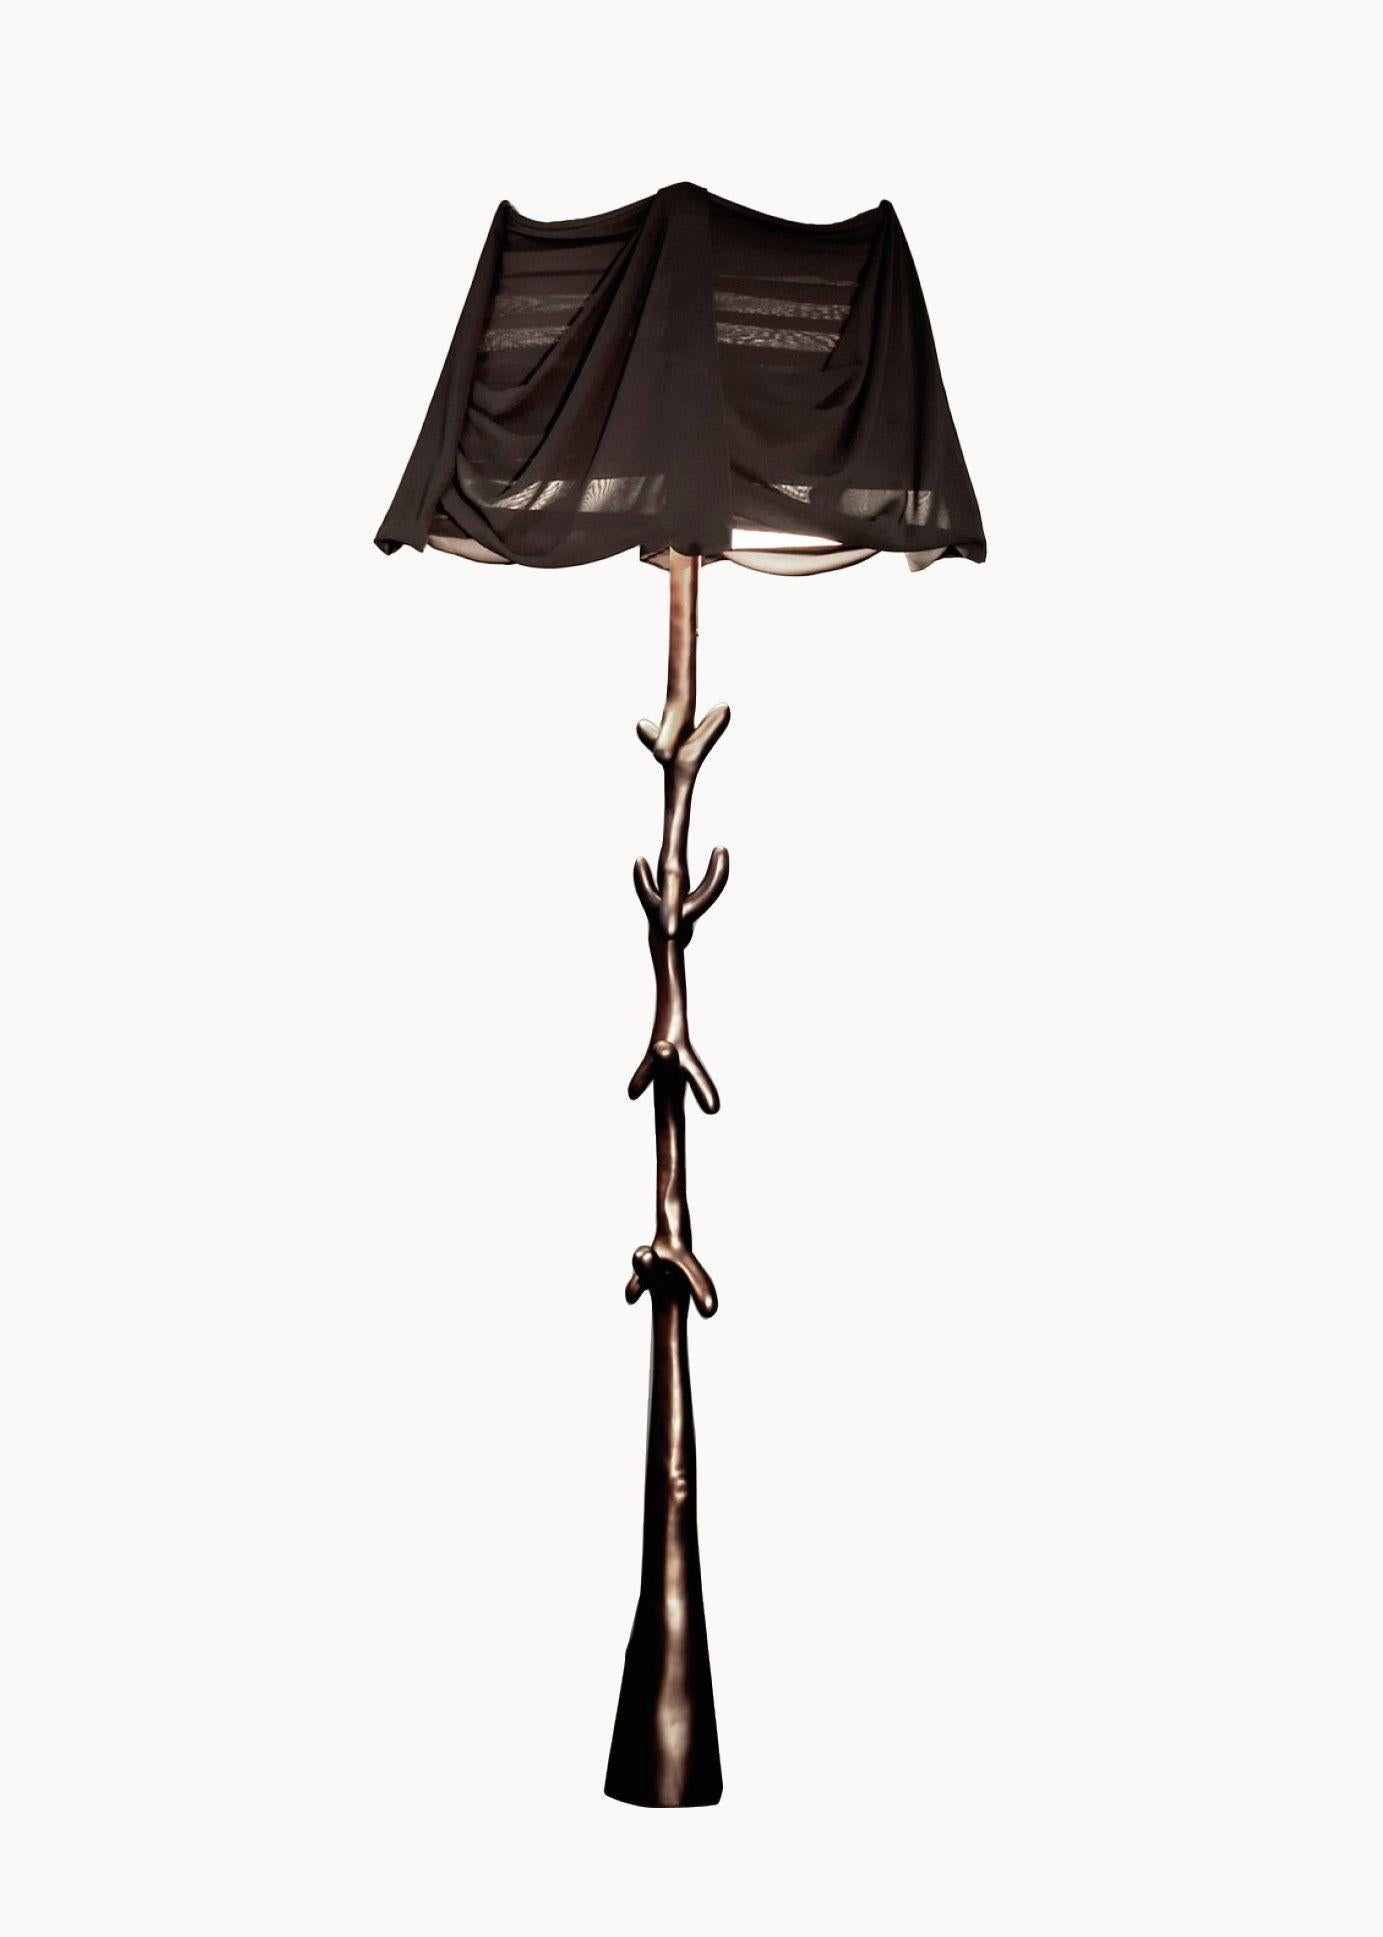 Muletas Lampenpaar, entworfen von Salvador Dali, hergestellt von BD furniture in Barcelona.

Limitierte Auflage
Gefärbter Lindenholz-Satin in Schwarz.
Lampenschirm aus transparentem schwarzem Chiffon.

Raffinierte MATERIALIEN und handwerkliche